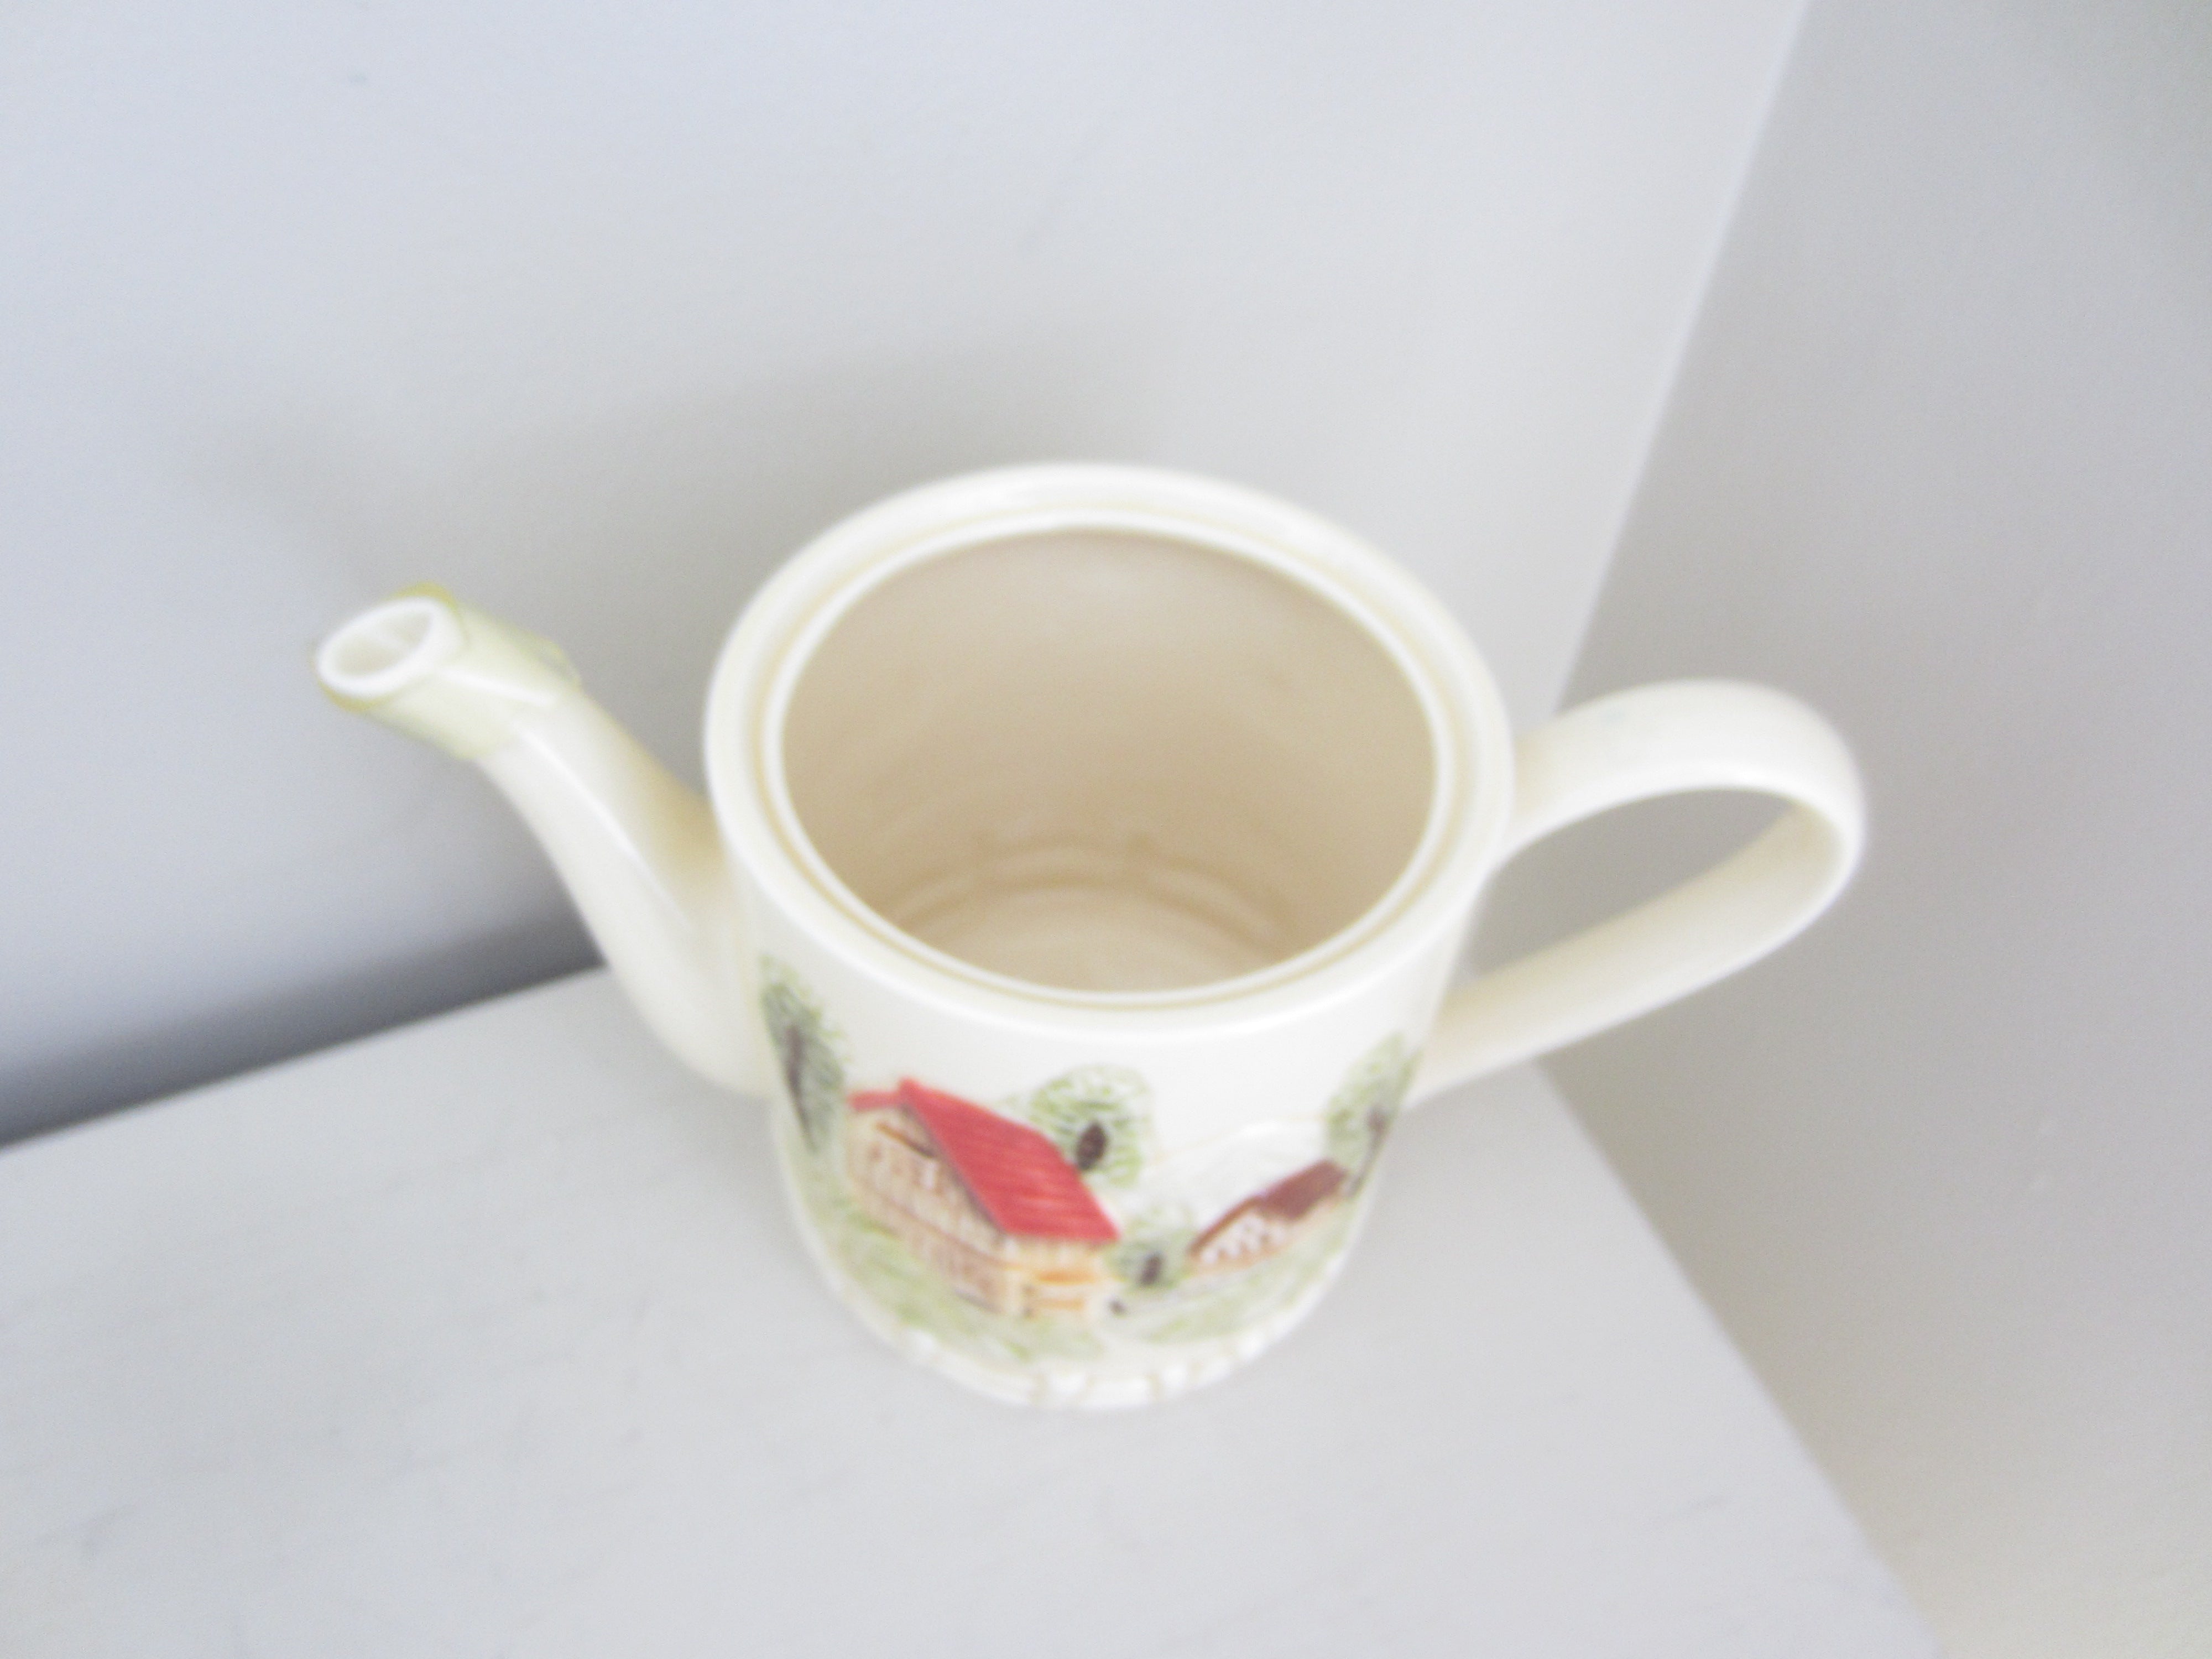 Vintage Ceramic Tea Set with raised Image Japan